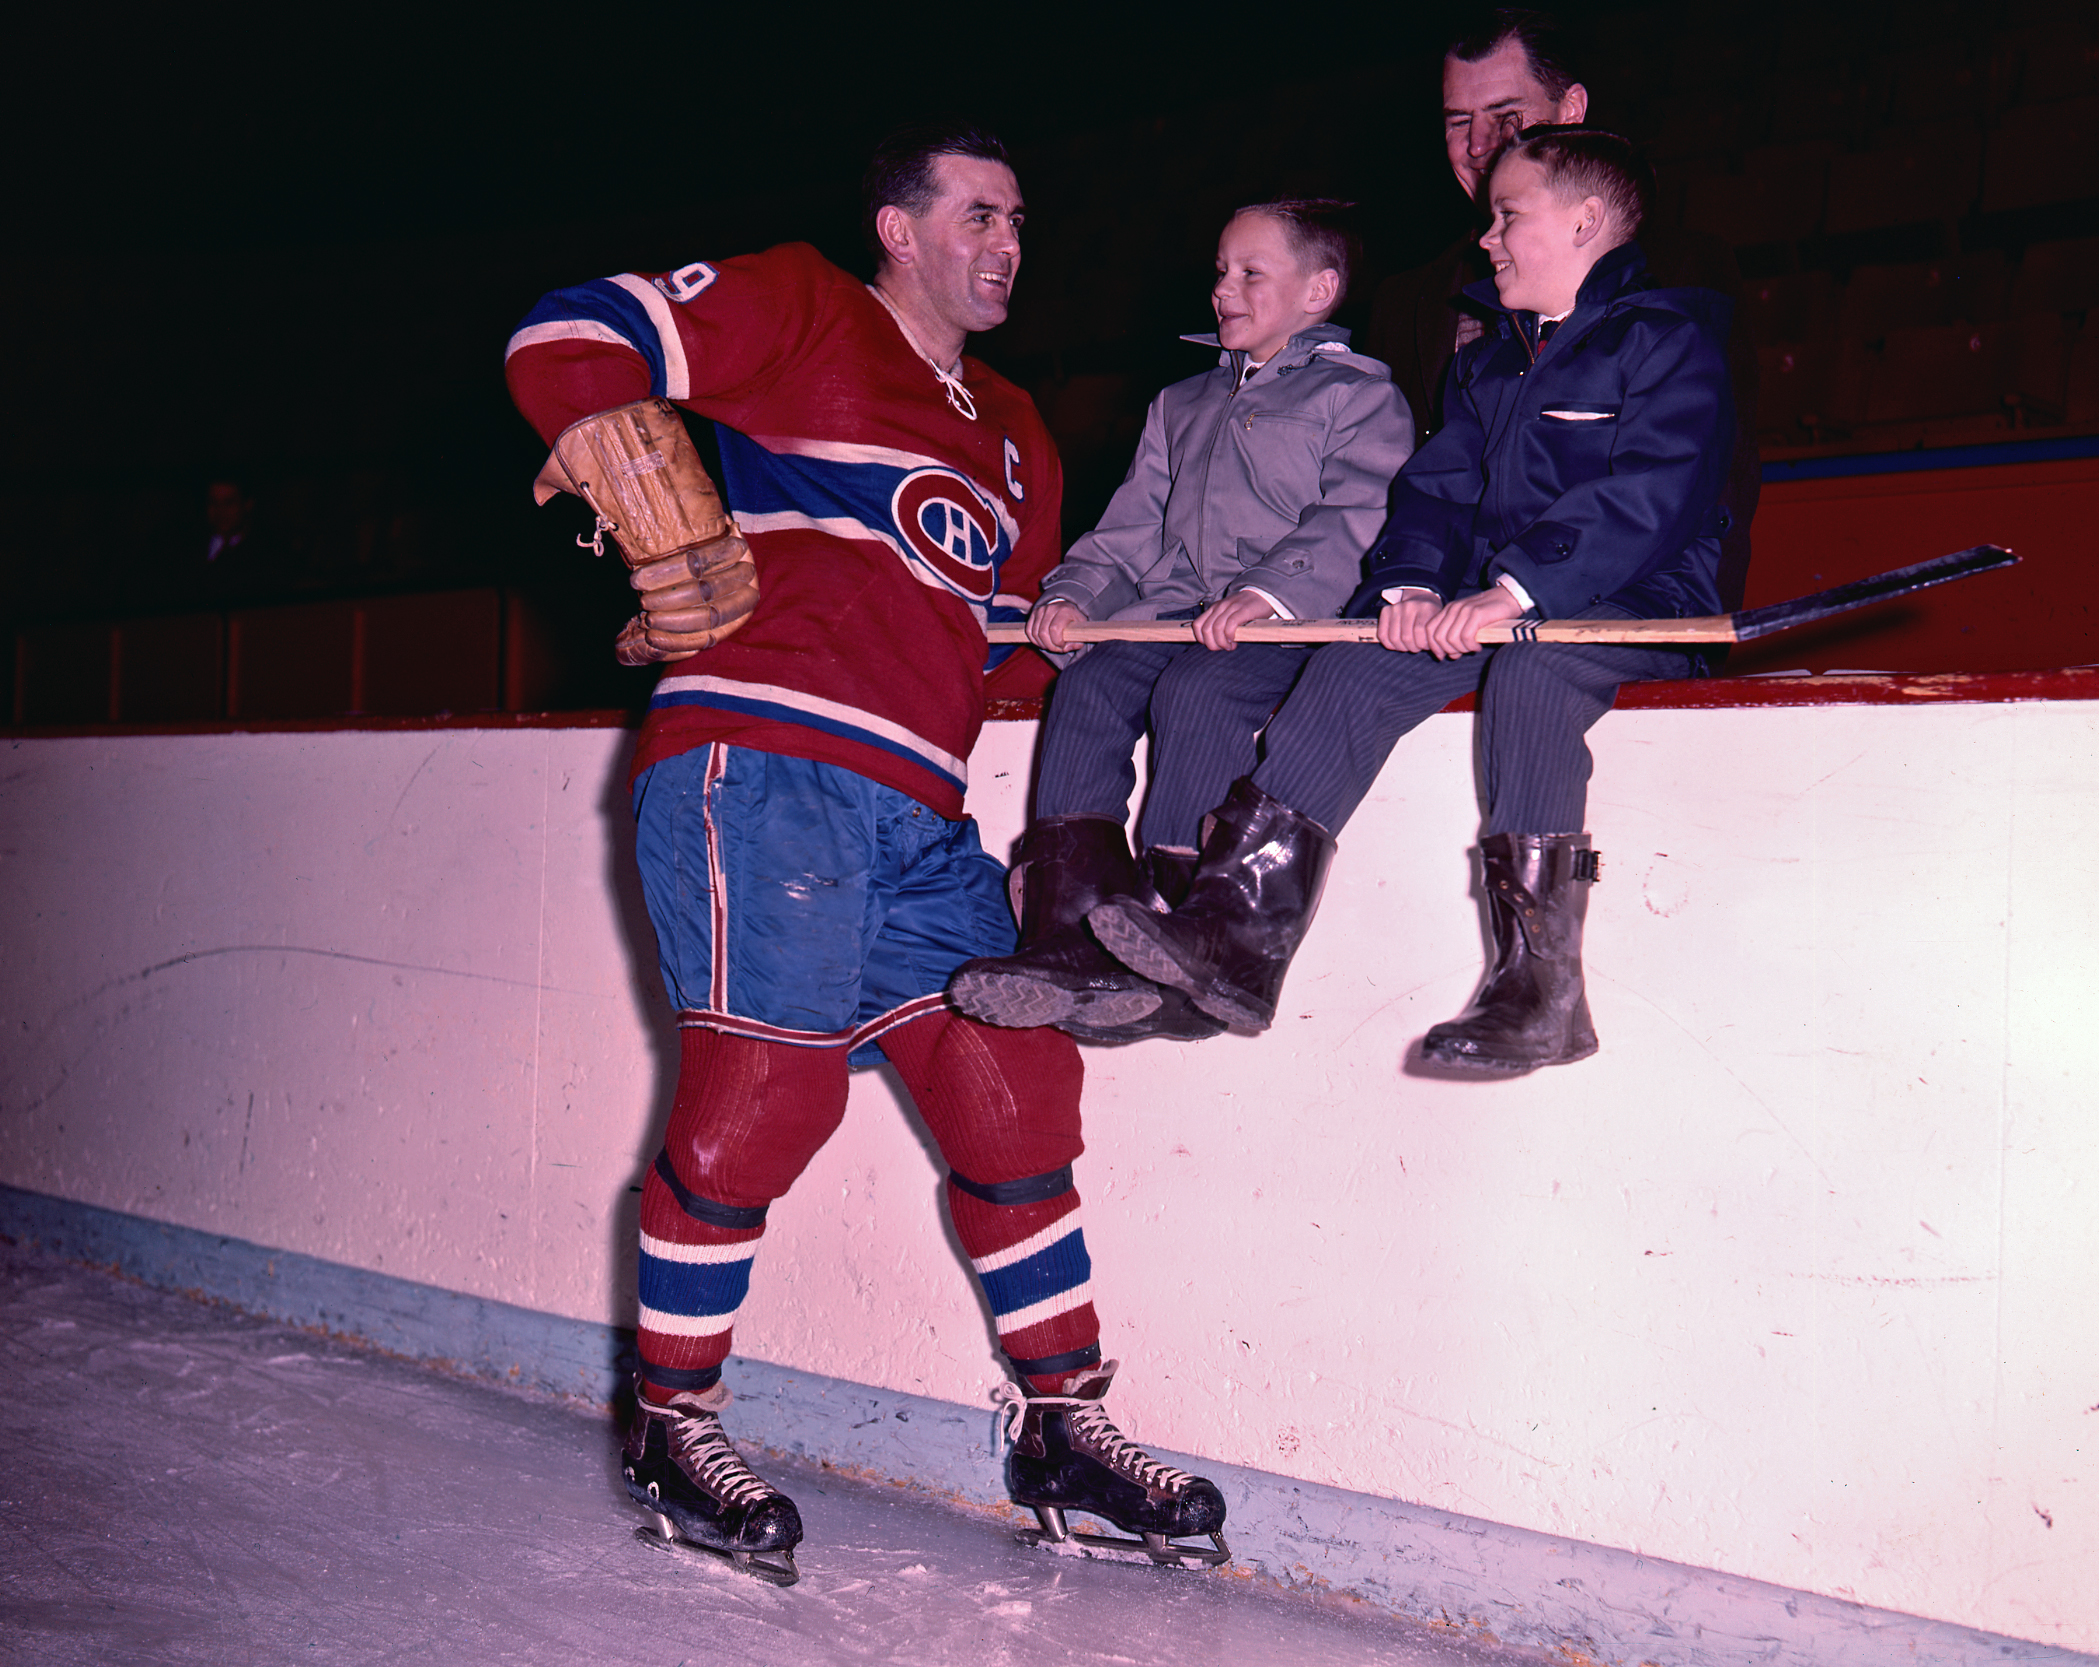 Photographie couleur de Maurice Richard affublé de son équipement du Canadien, souriant à deux jeunes garçons tenant un bâton de hockey.